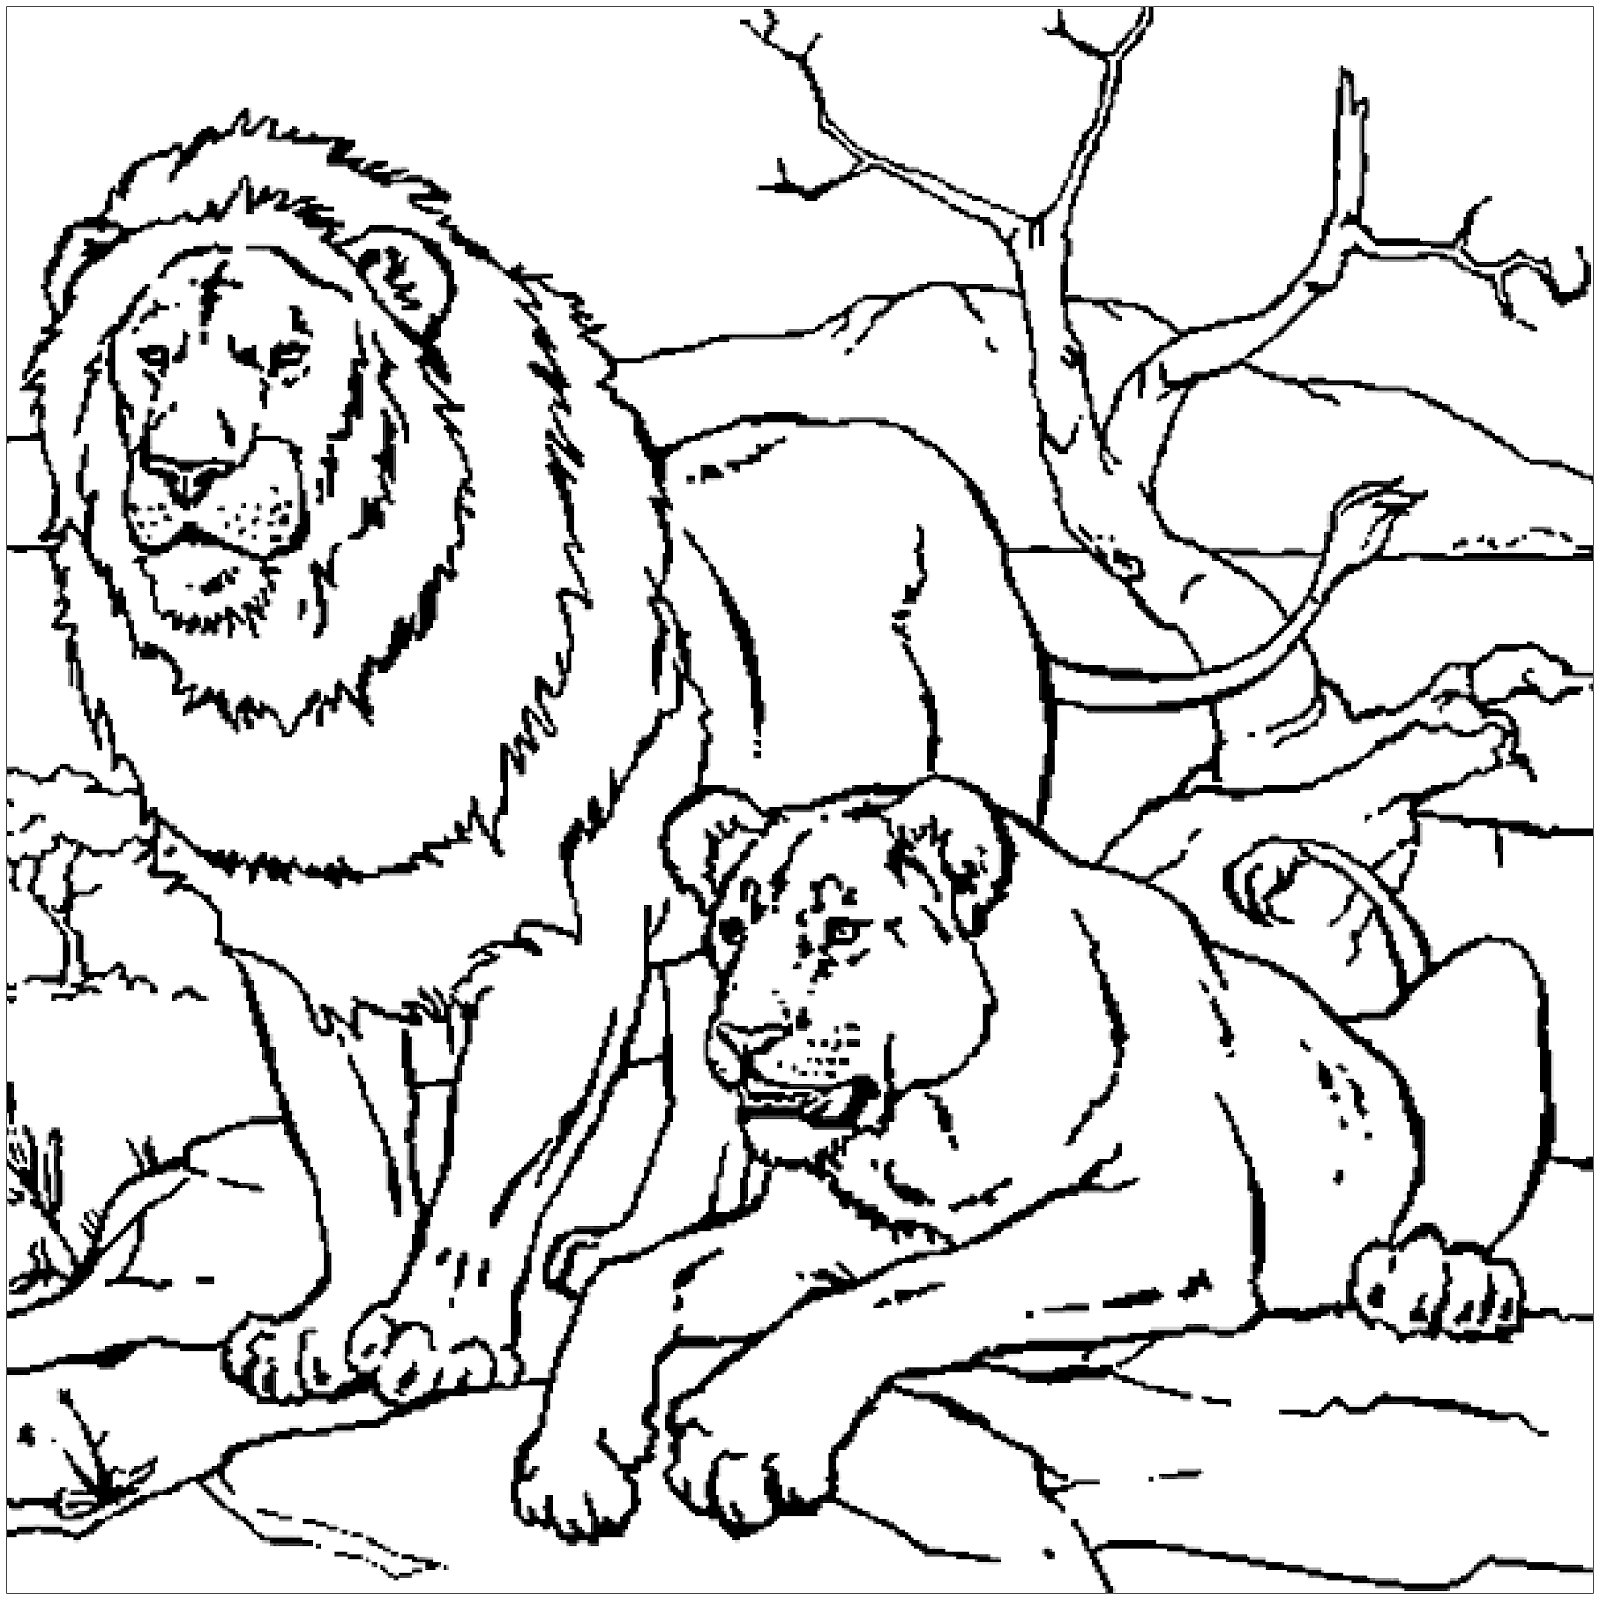 Xem hơn 48 ảnh về hình vẽ con sư tử  daotaonec